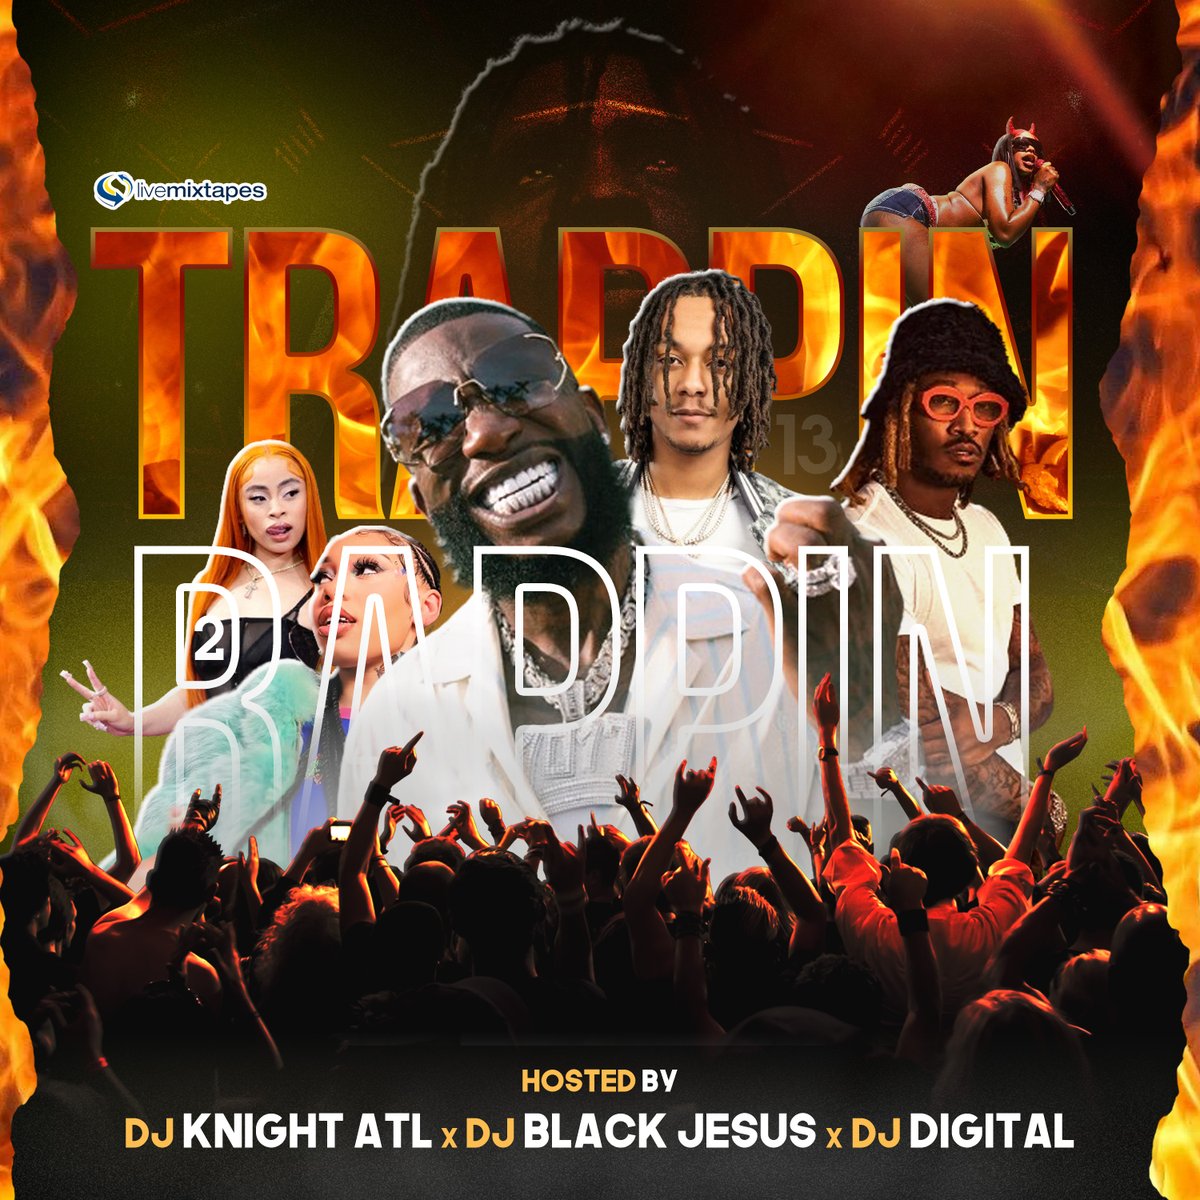 [Mixtape] Trappin 2 Rappin 13 :: #GetItLIVE!  livemixtapes.com/mixtape/trappi… @LiveMixtapes @djblackjesus